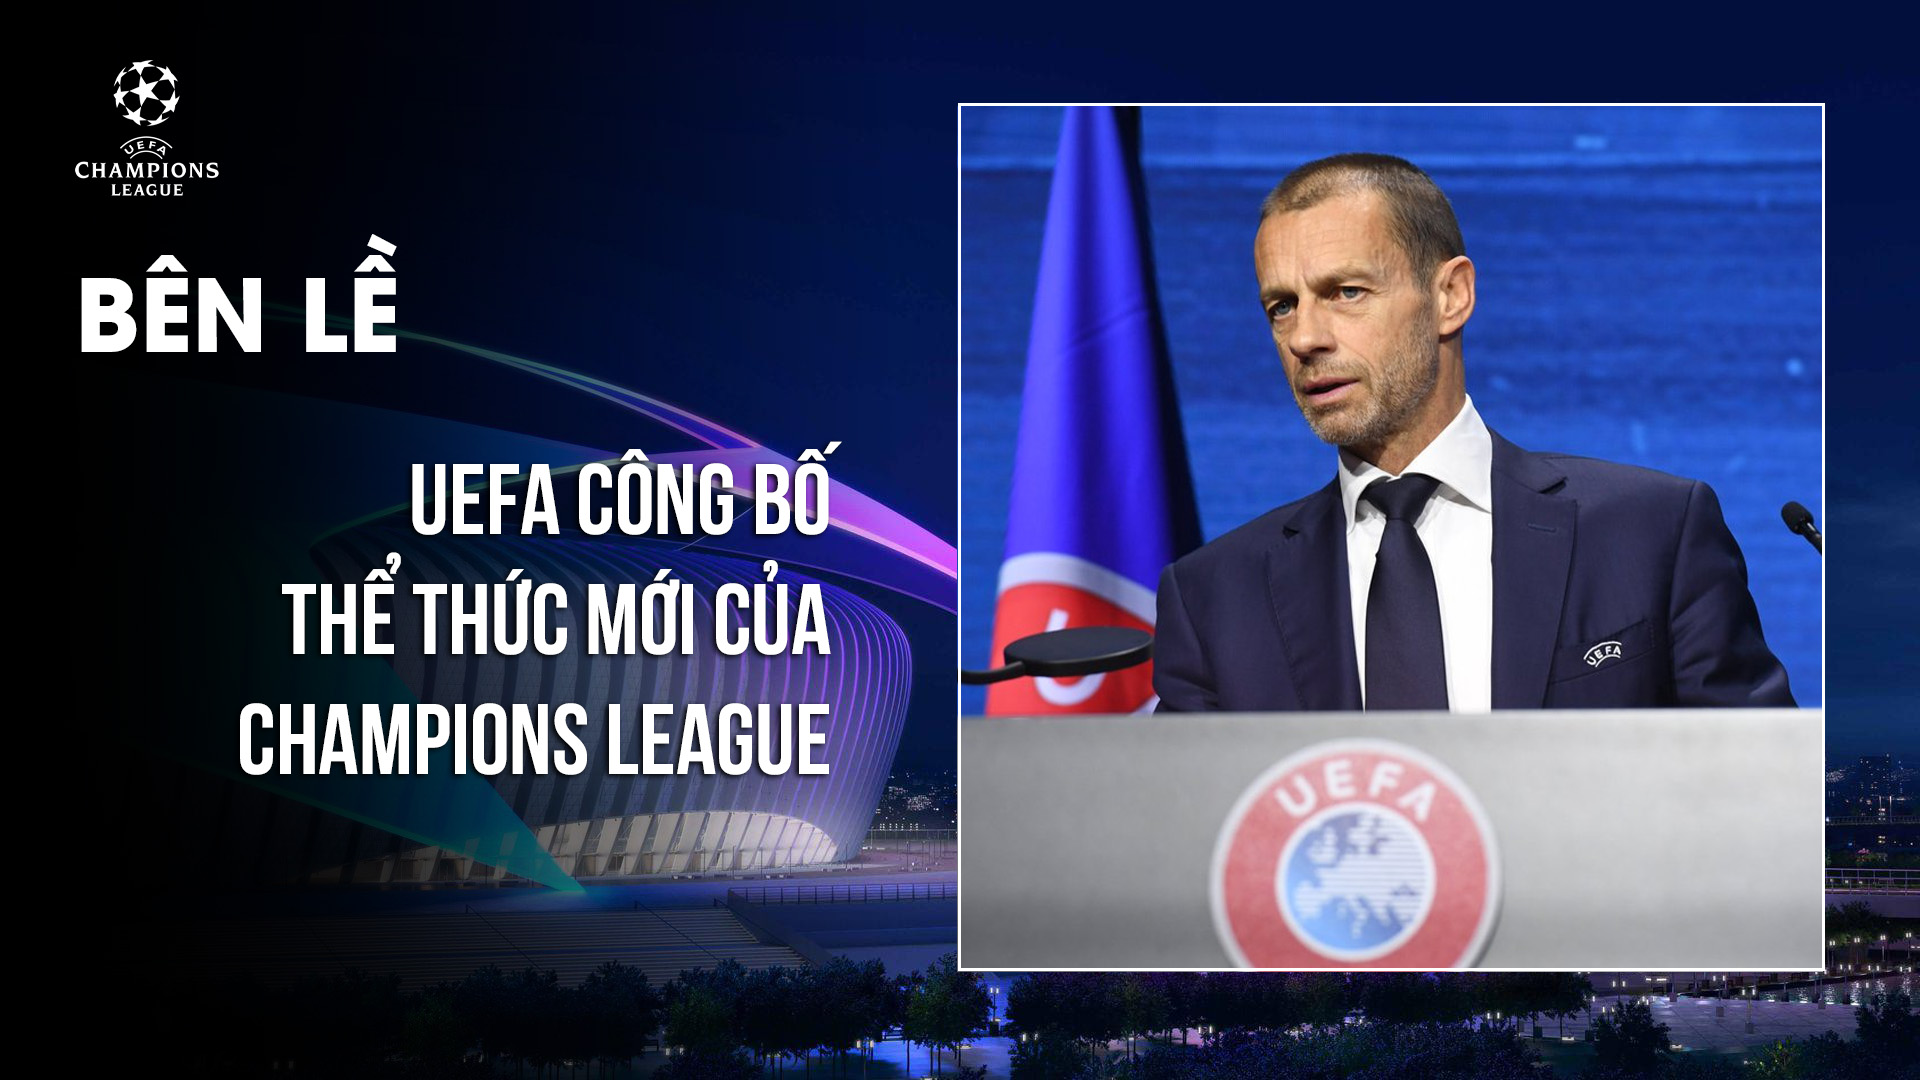 UEFA công bố thể thức mới của Champions League - UEFA Champions League